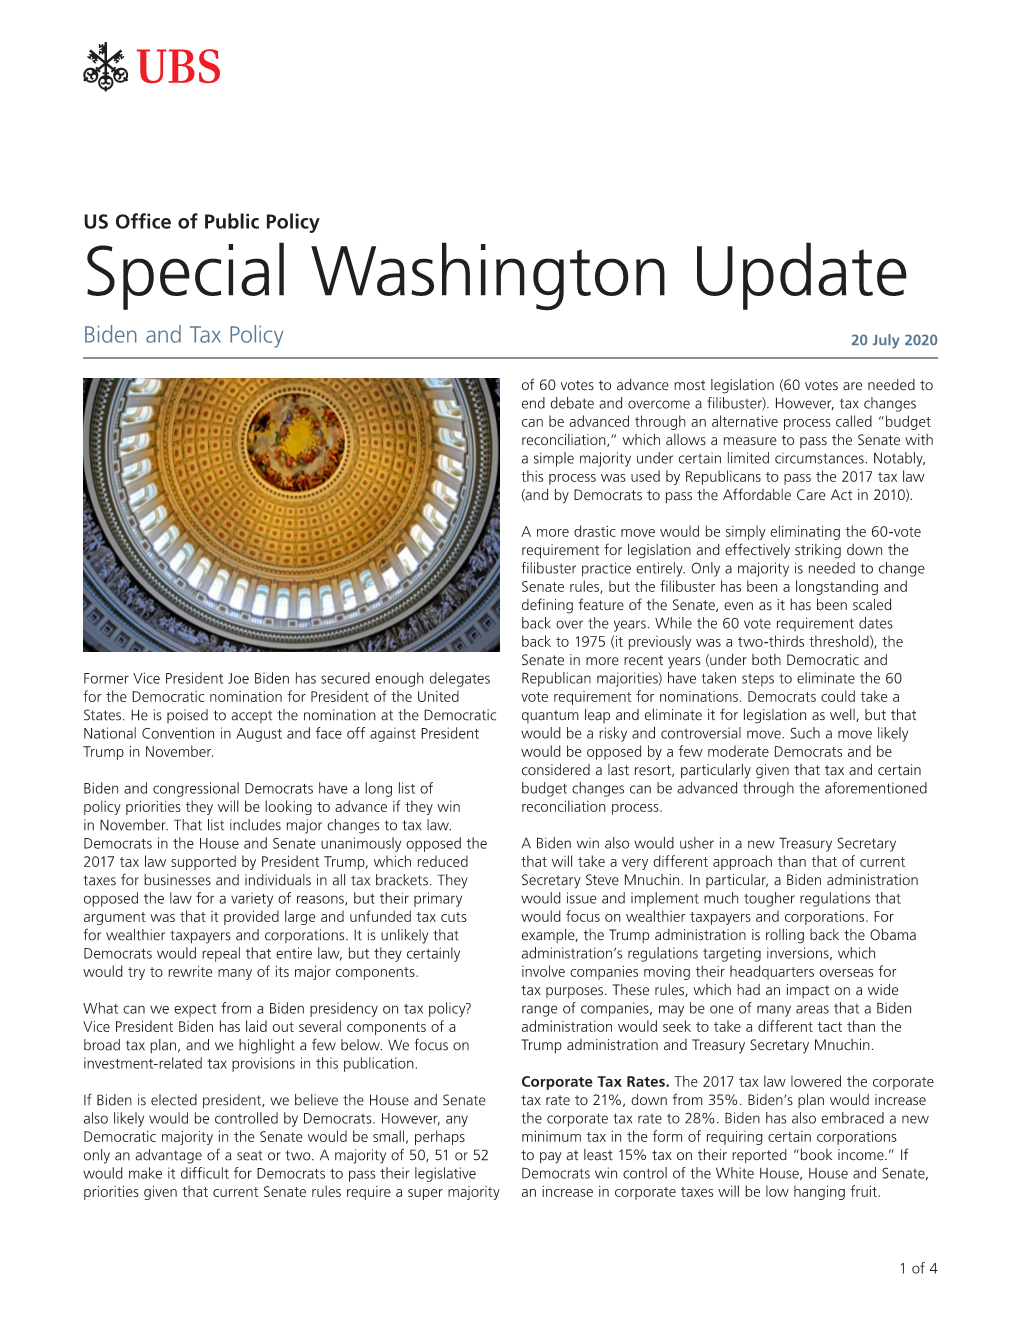 Special Washington Updates, Biden & Tax Policy